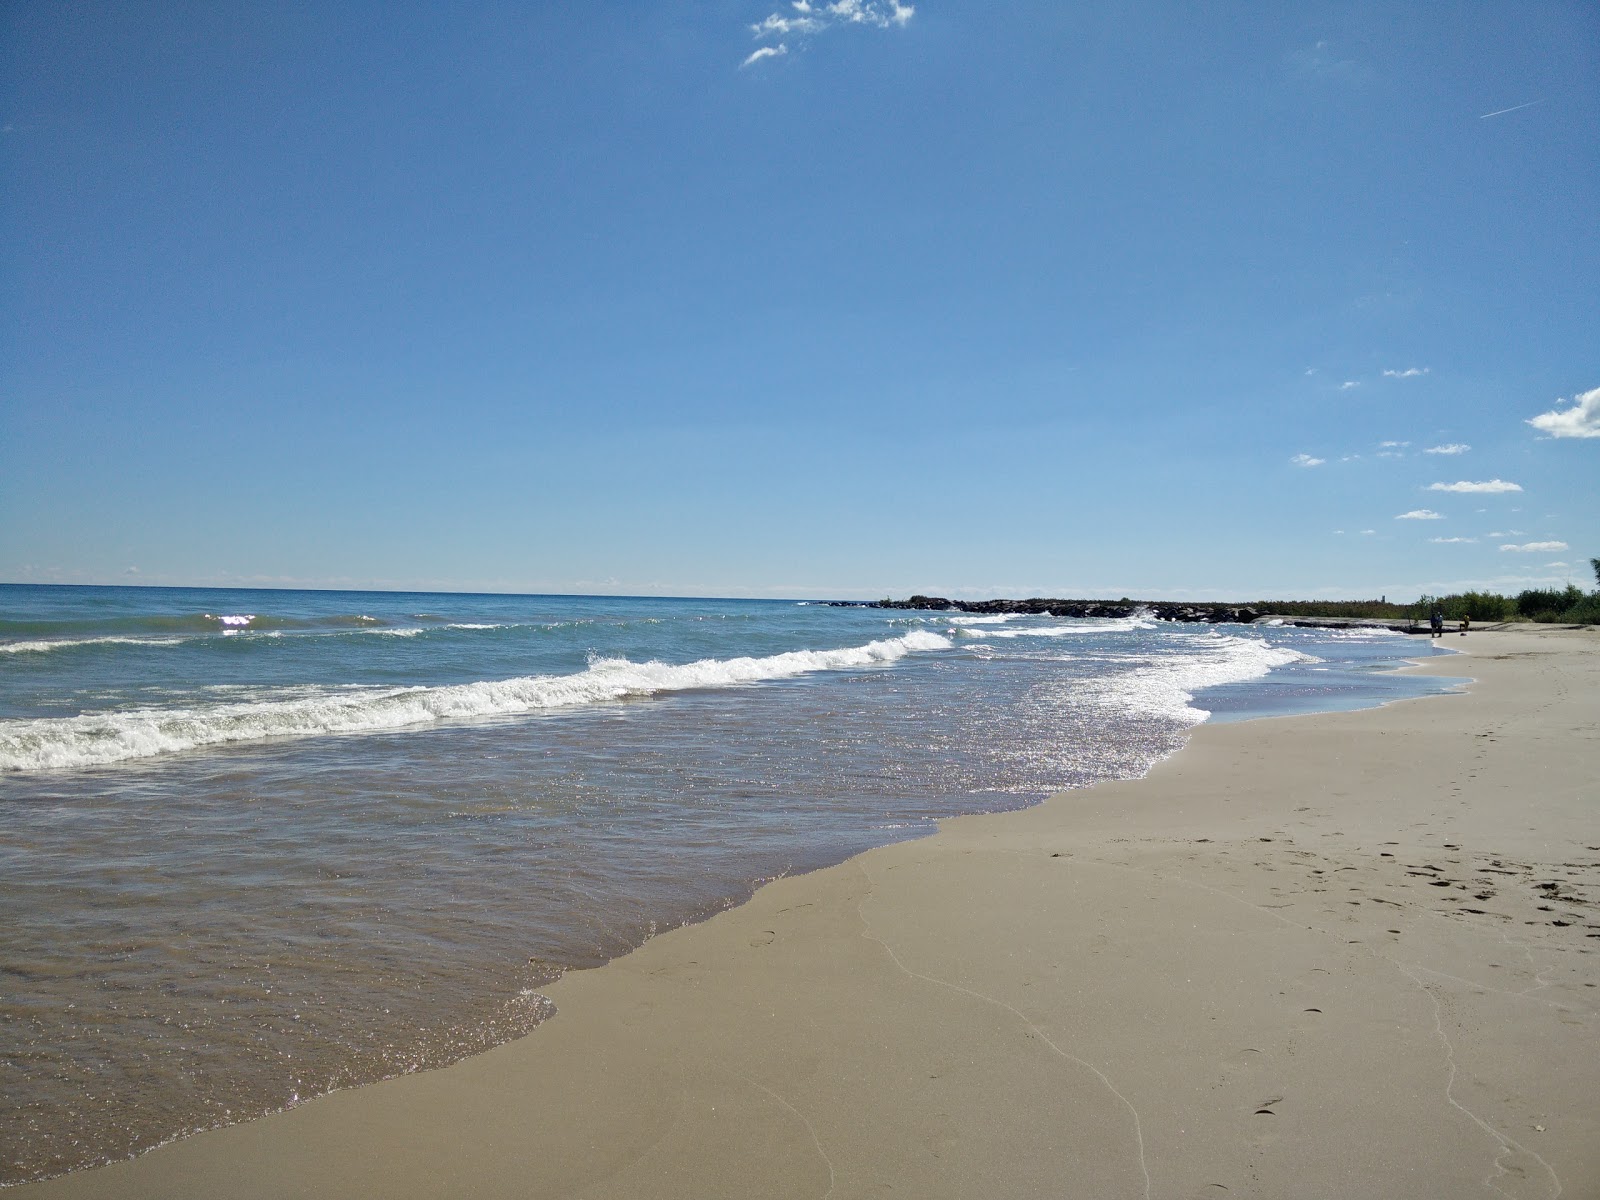 Fotografie cu Nunn Beach cu plajă spațioasă